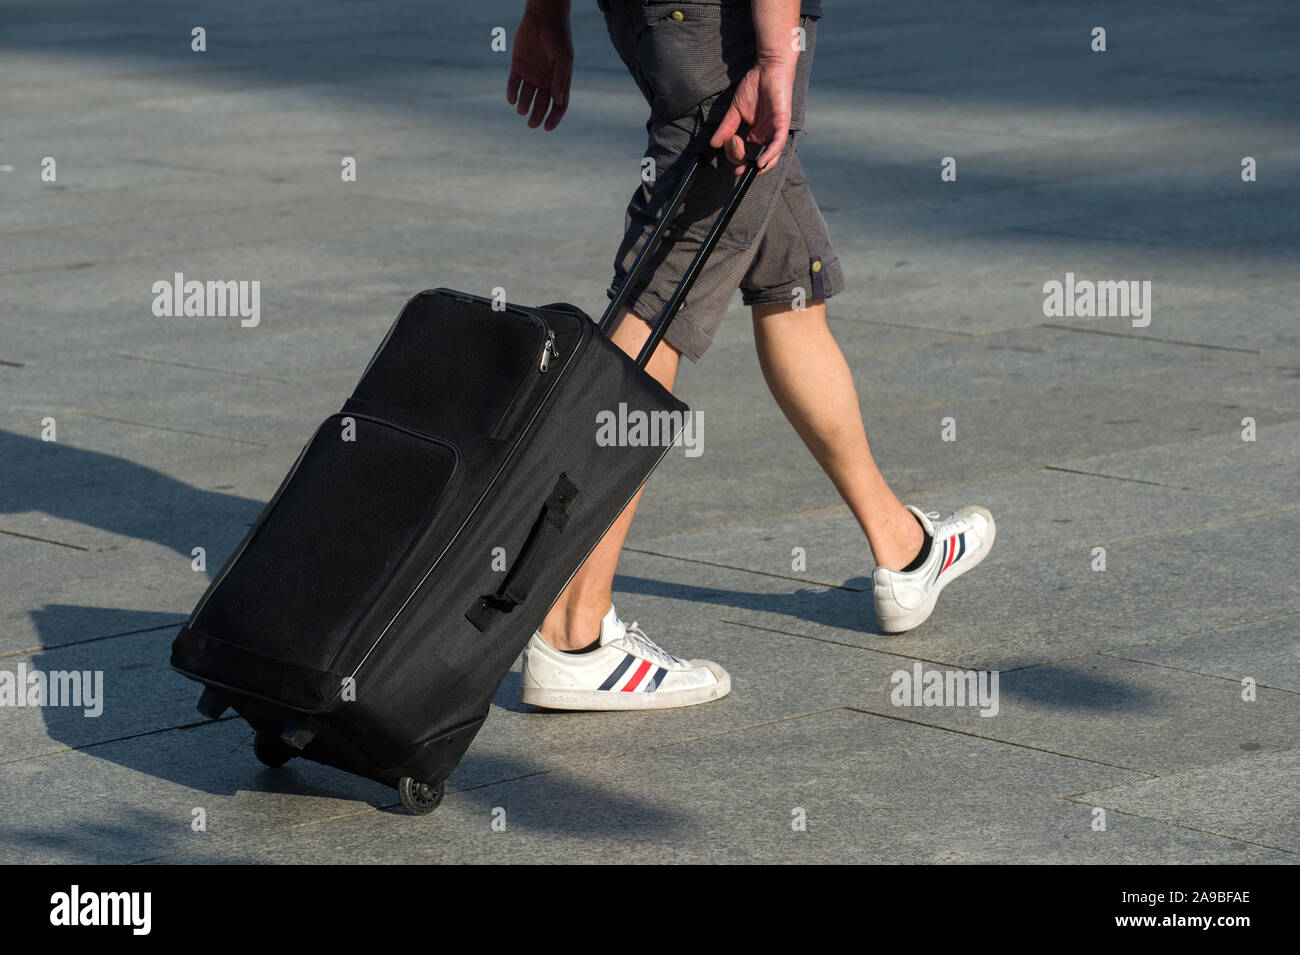 17.08.2018, Berlin, Allemagne - jeune homme de la valise. 0CE180817D004CAROEX.JPG [communiqué de modèle : Non, des biens : non applicable (c) caro Banque D'Images